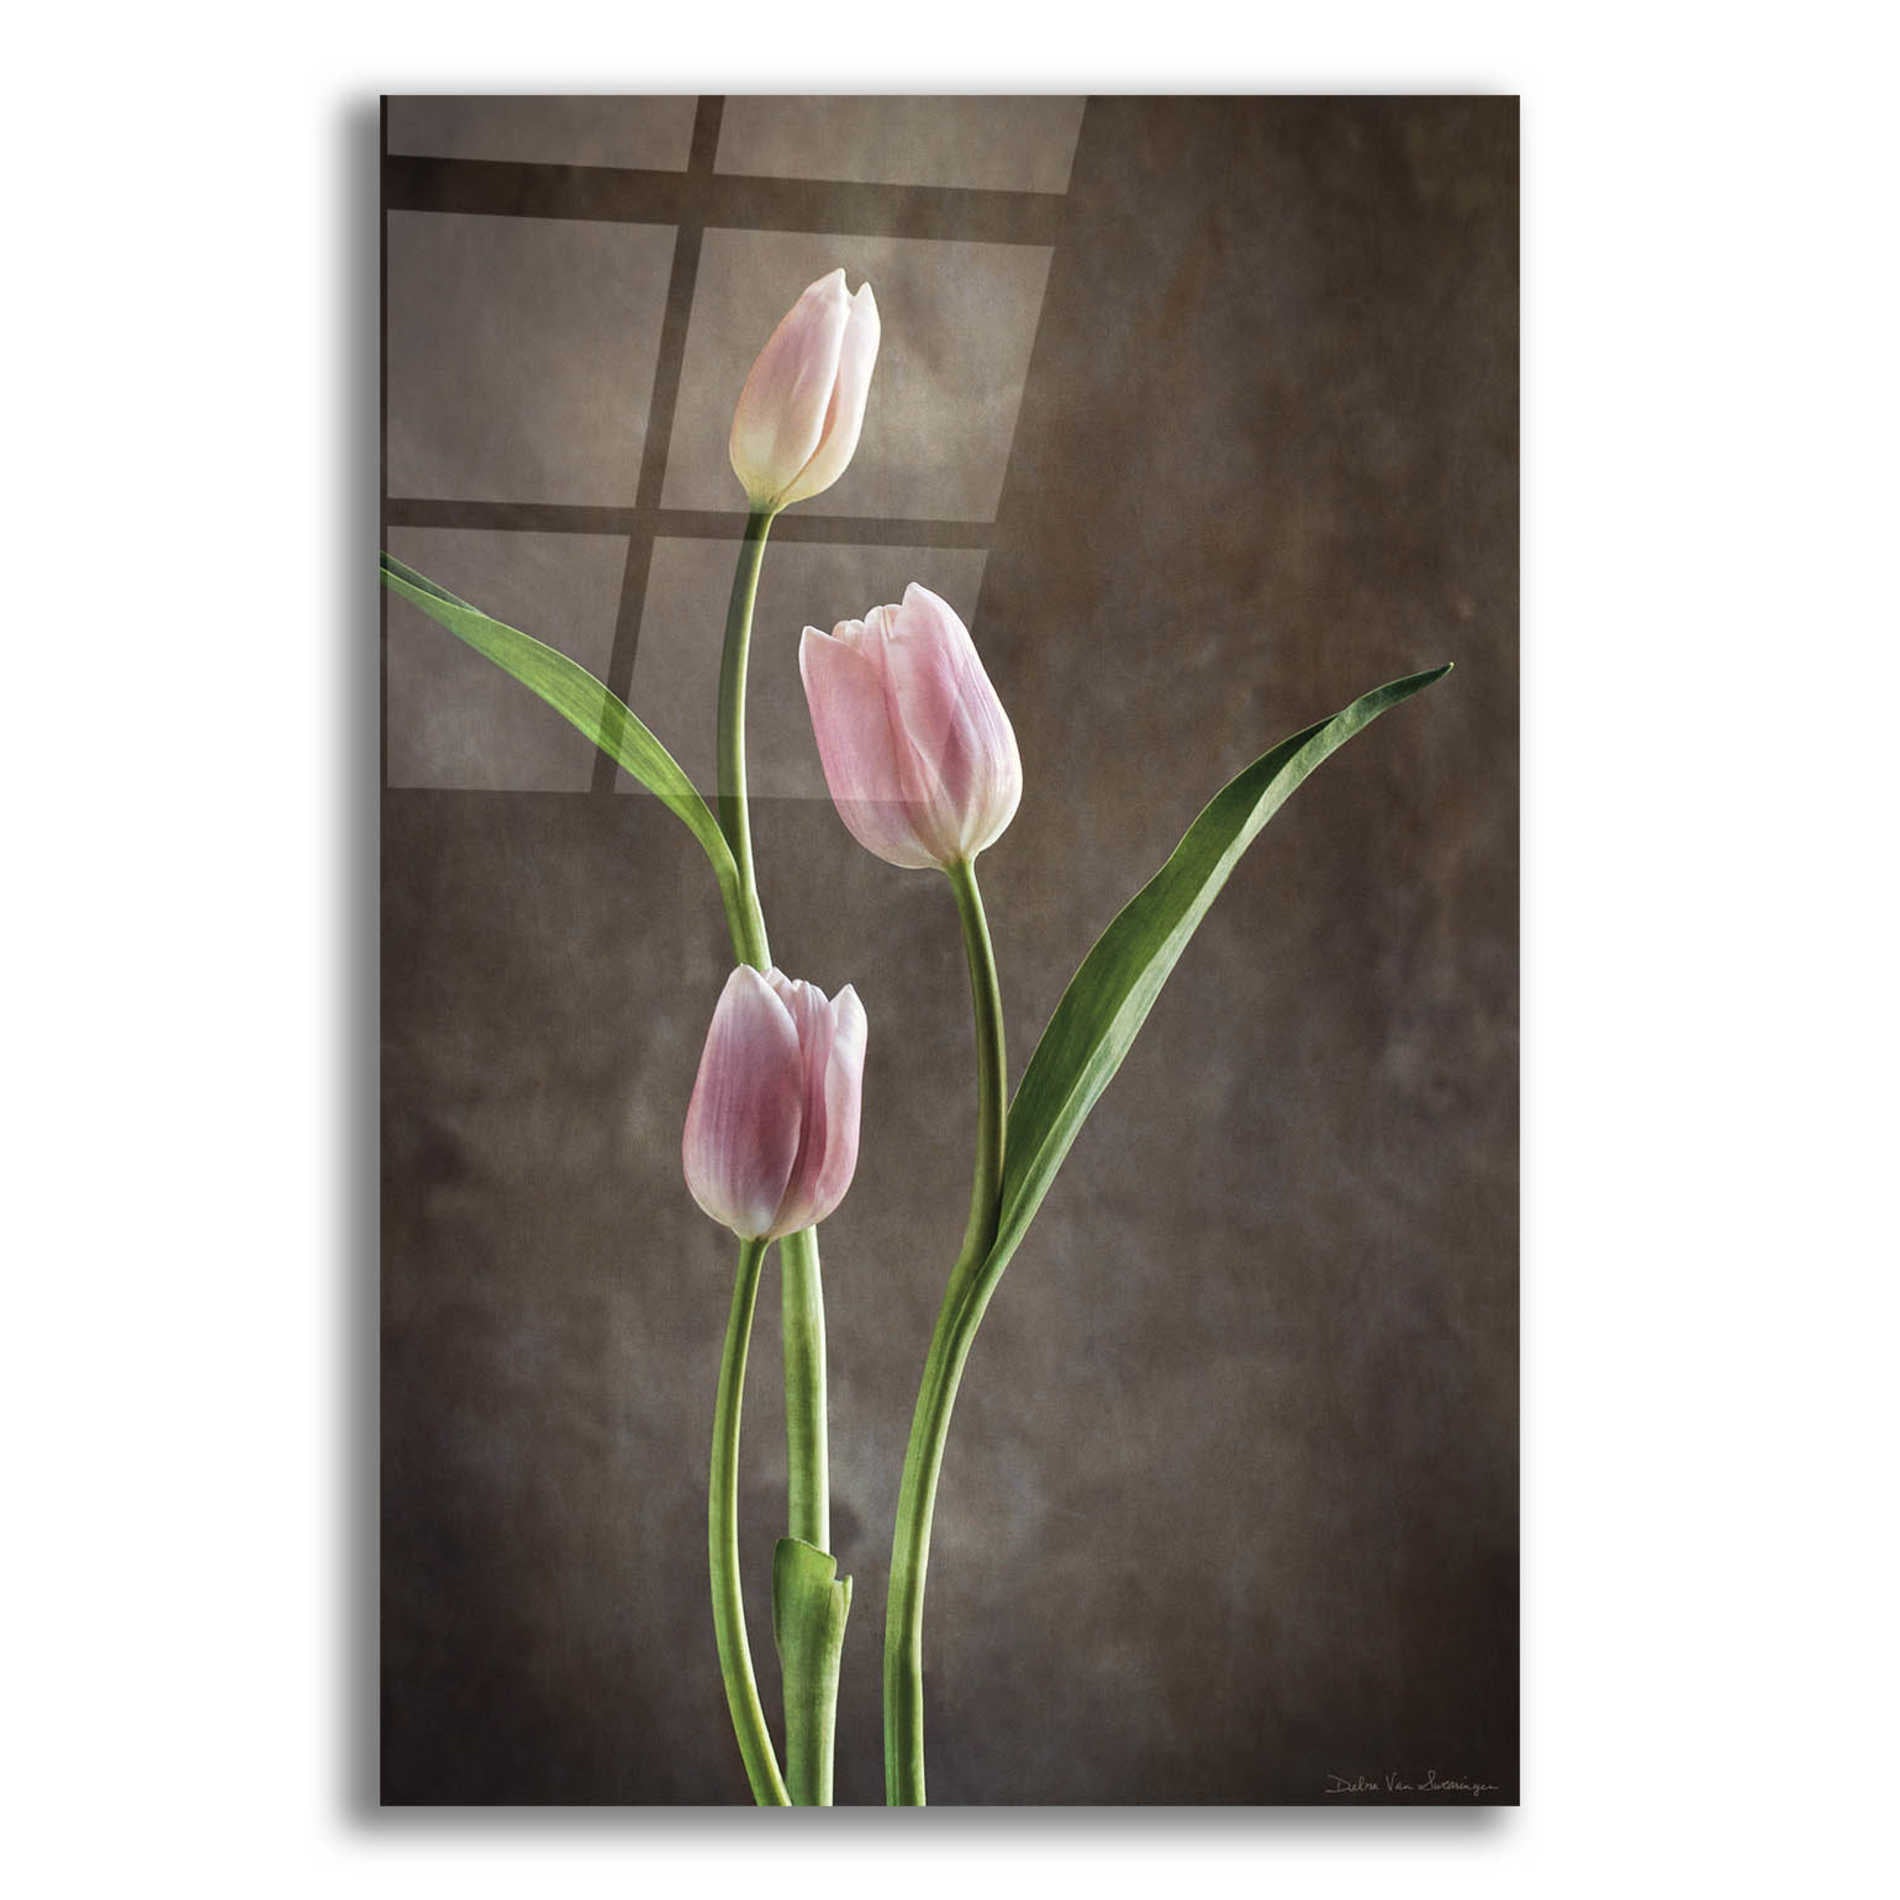 Epic Art 'Spring Tulips VIII' by Debra Van Swearingen, Acrylic Glass Wall Art,12x16